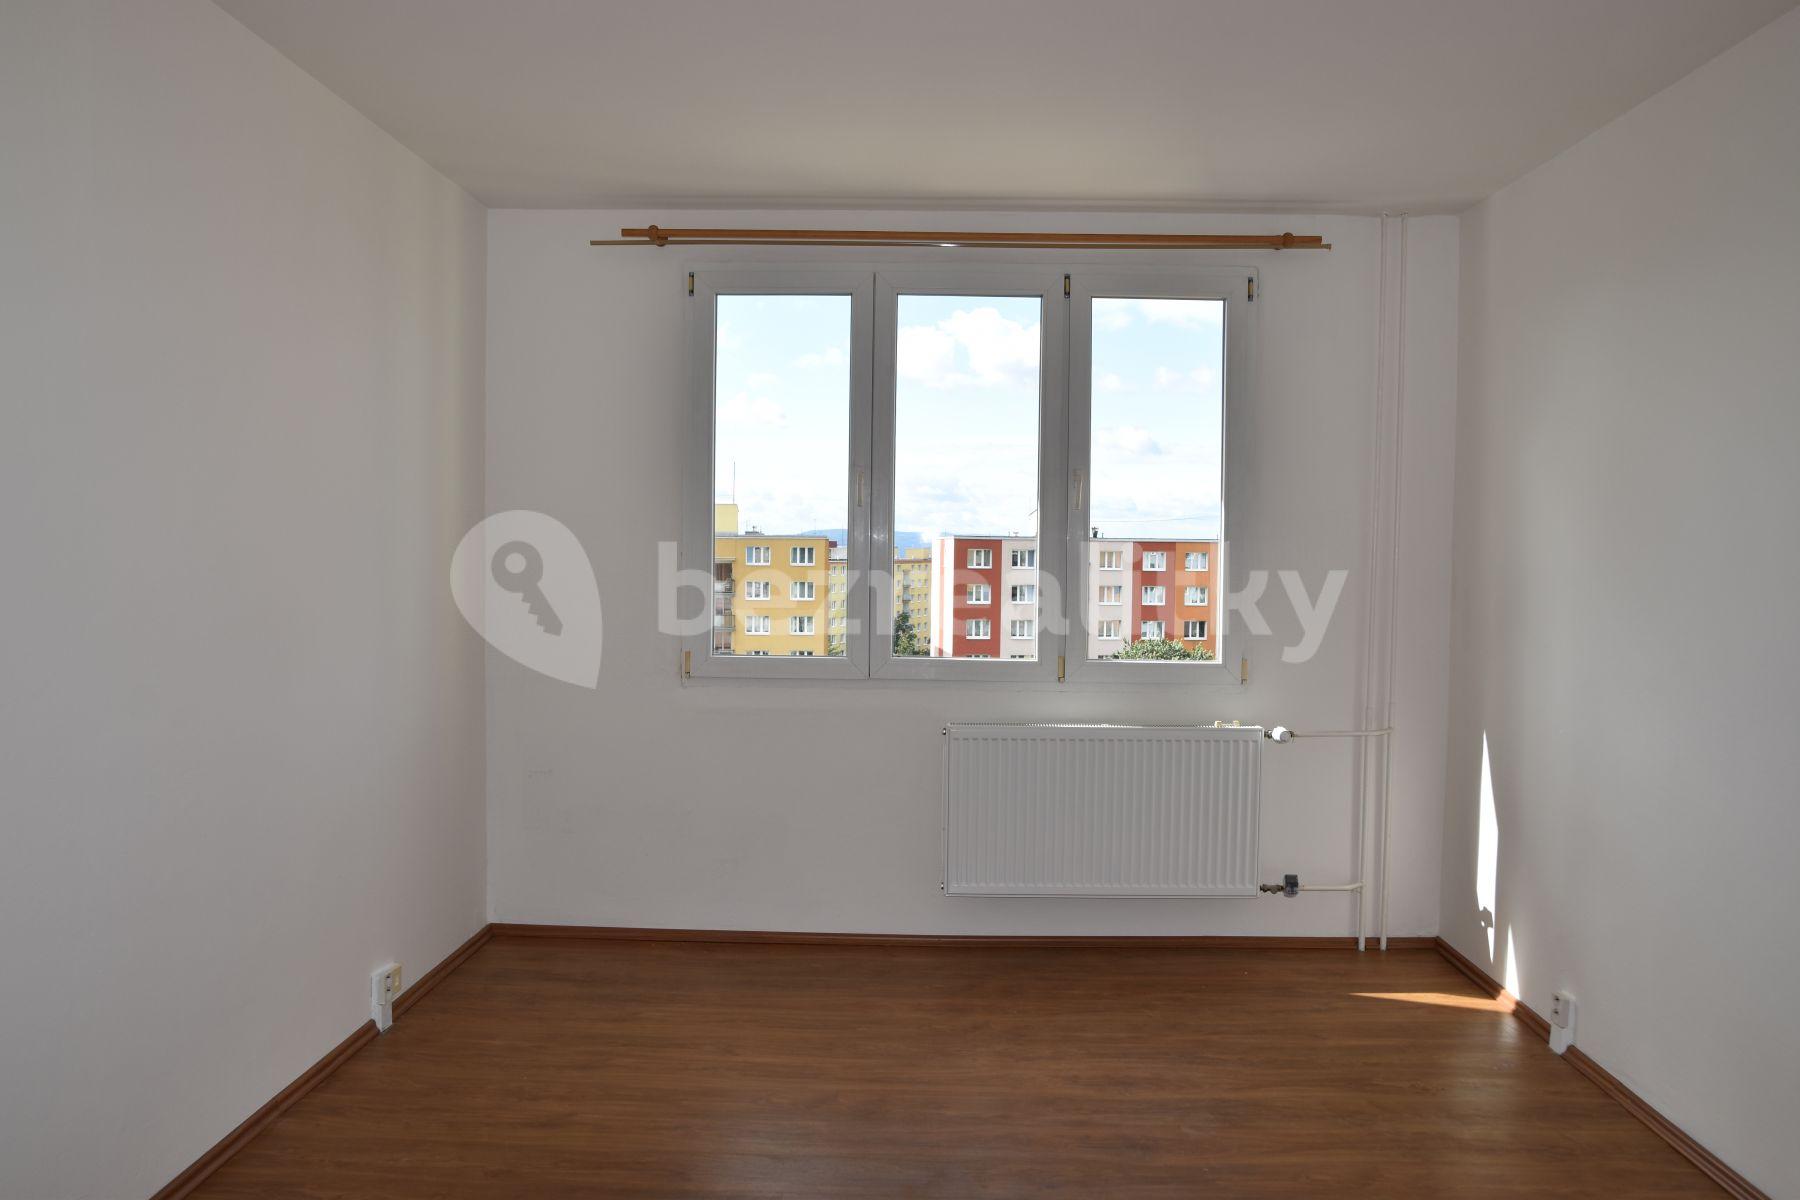 2 bedroom flat to rent, 63 m², Olbramovická, Prague, Prague